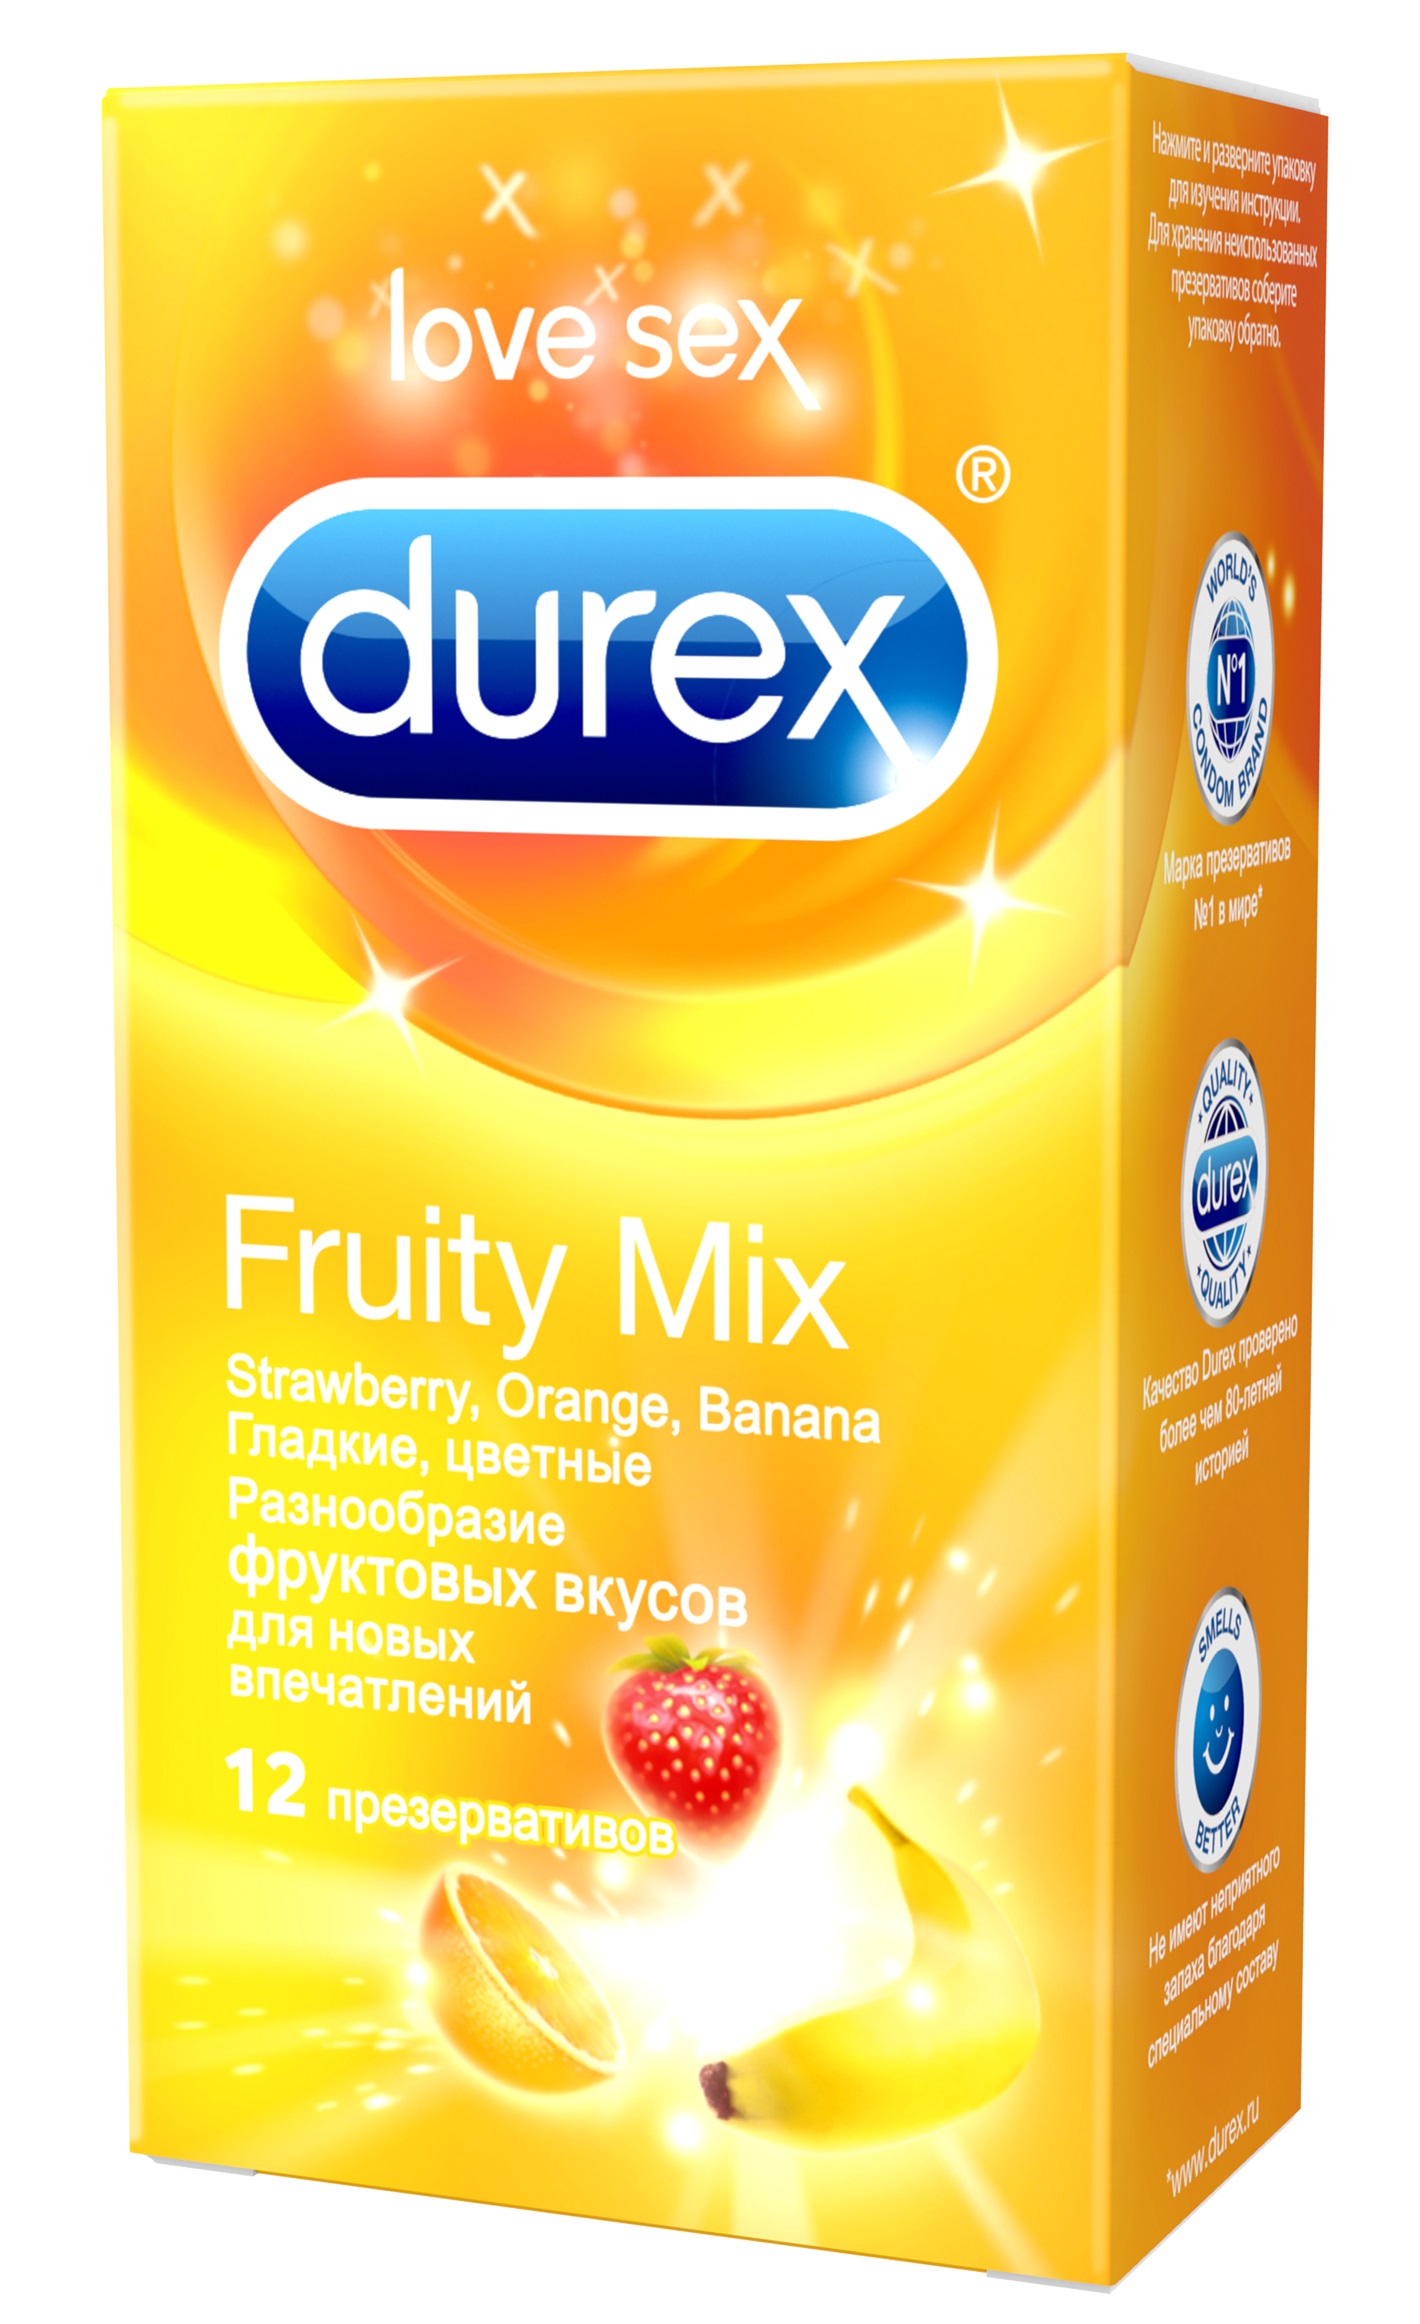 Durex Fruity Mix Презервативы ароматизированные разнообразие фруктовых вкусов для новых впечатлений, 12 шт